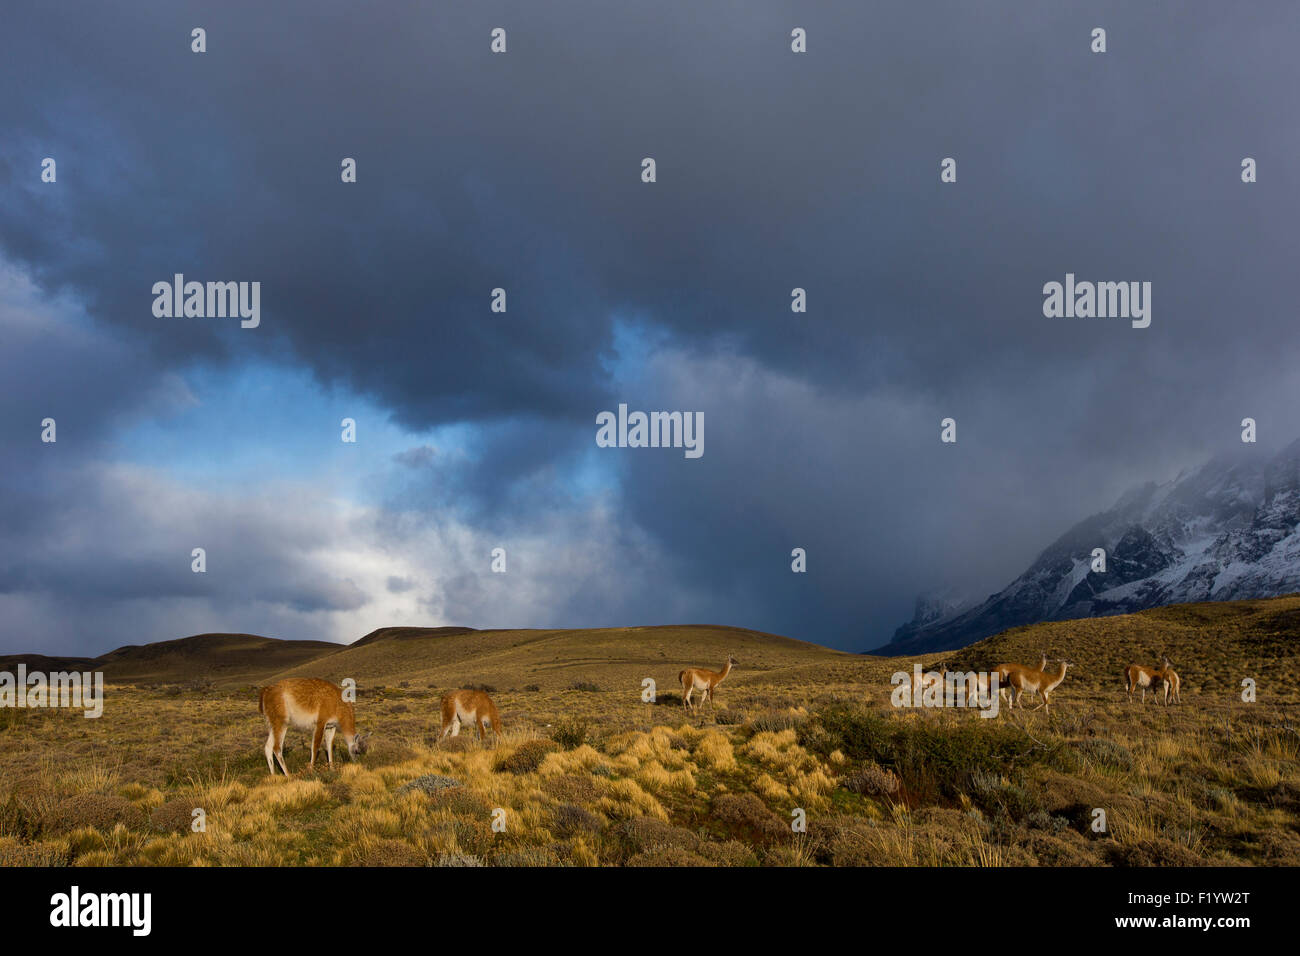 Guanaco (Lama guanicoe) Groupe vu contre ciel d'orage Parc National Torres del Paine au Chili Banque D'Images